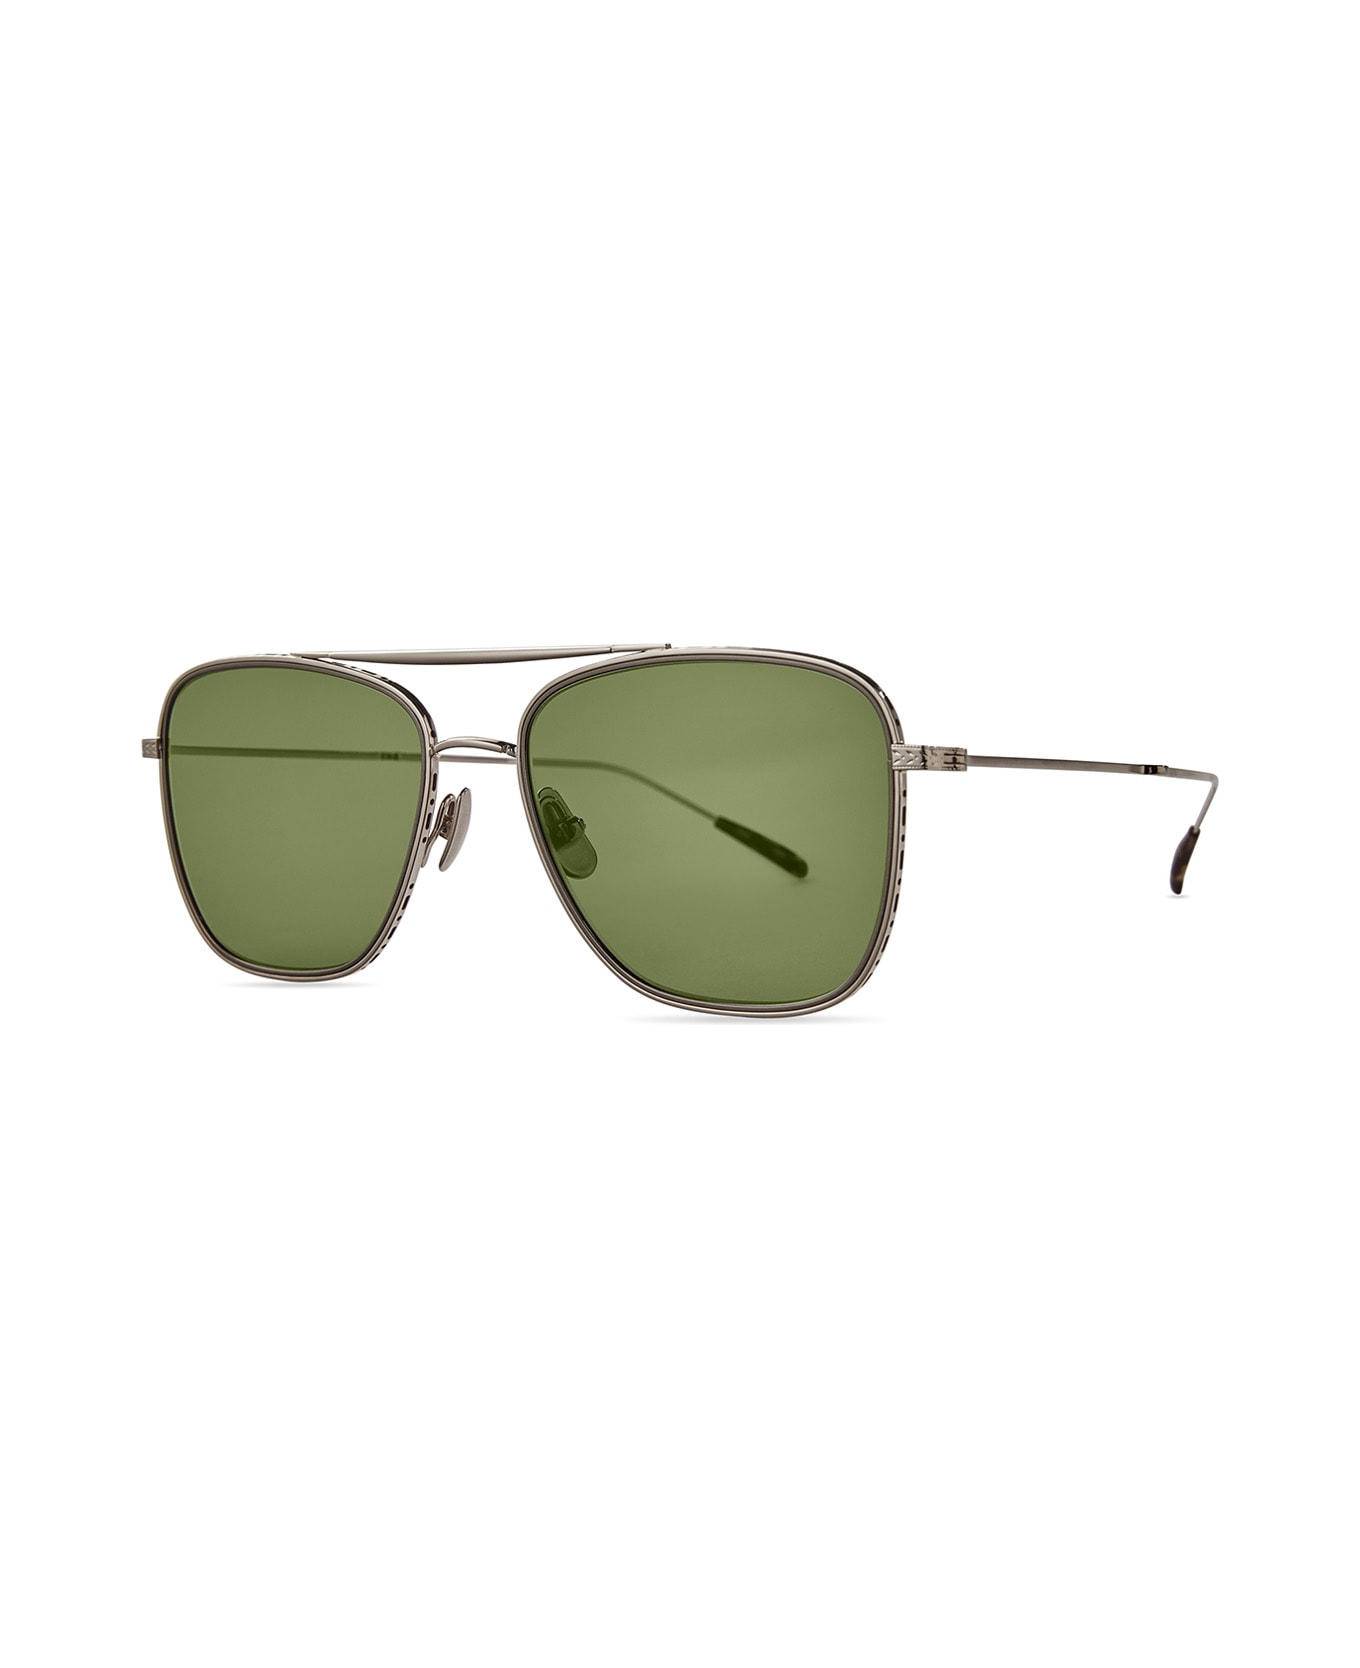 Mr. Leight Novarro S 12k White Gold-maple/green Sunglasses - 12K White Gold-Maple/Green